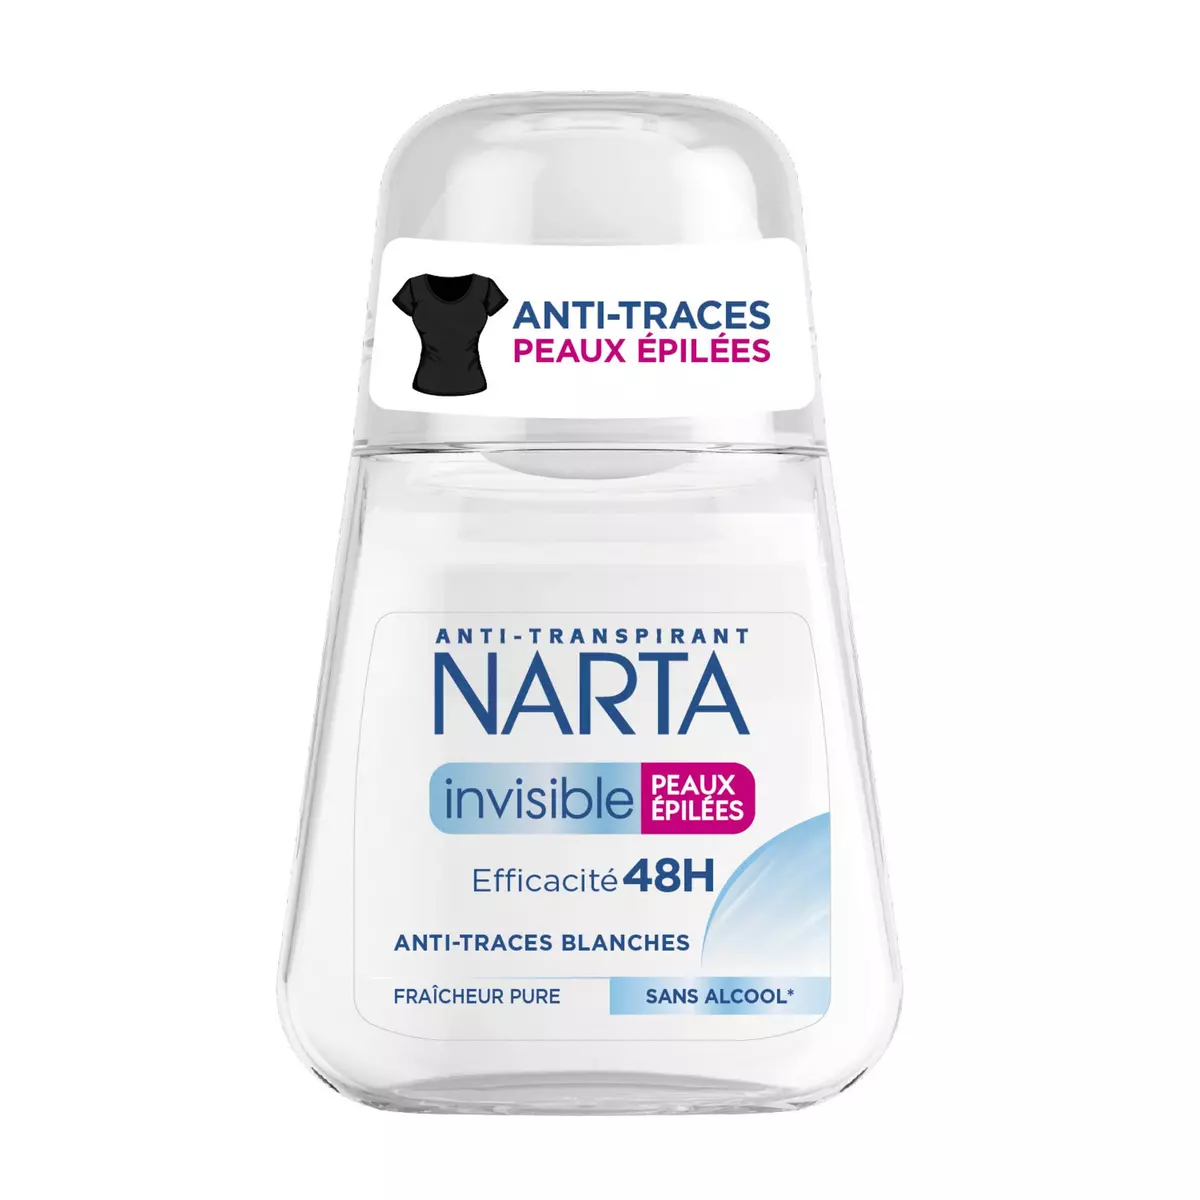 NARTA Déodorant bille 48h invisible sans alcool pour peaux épilées 50ml